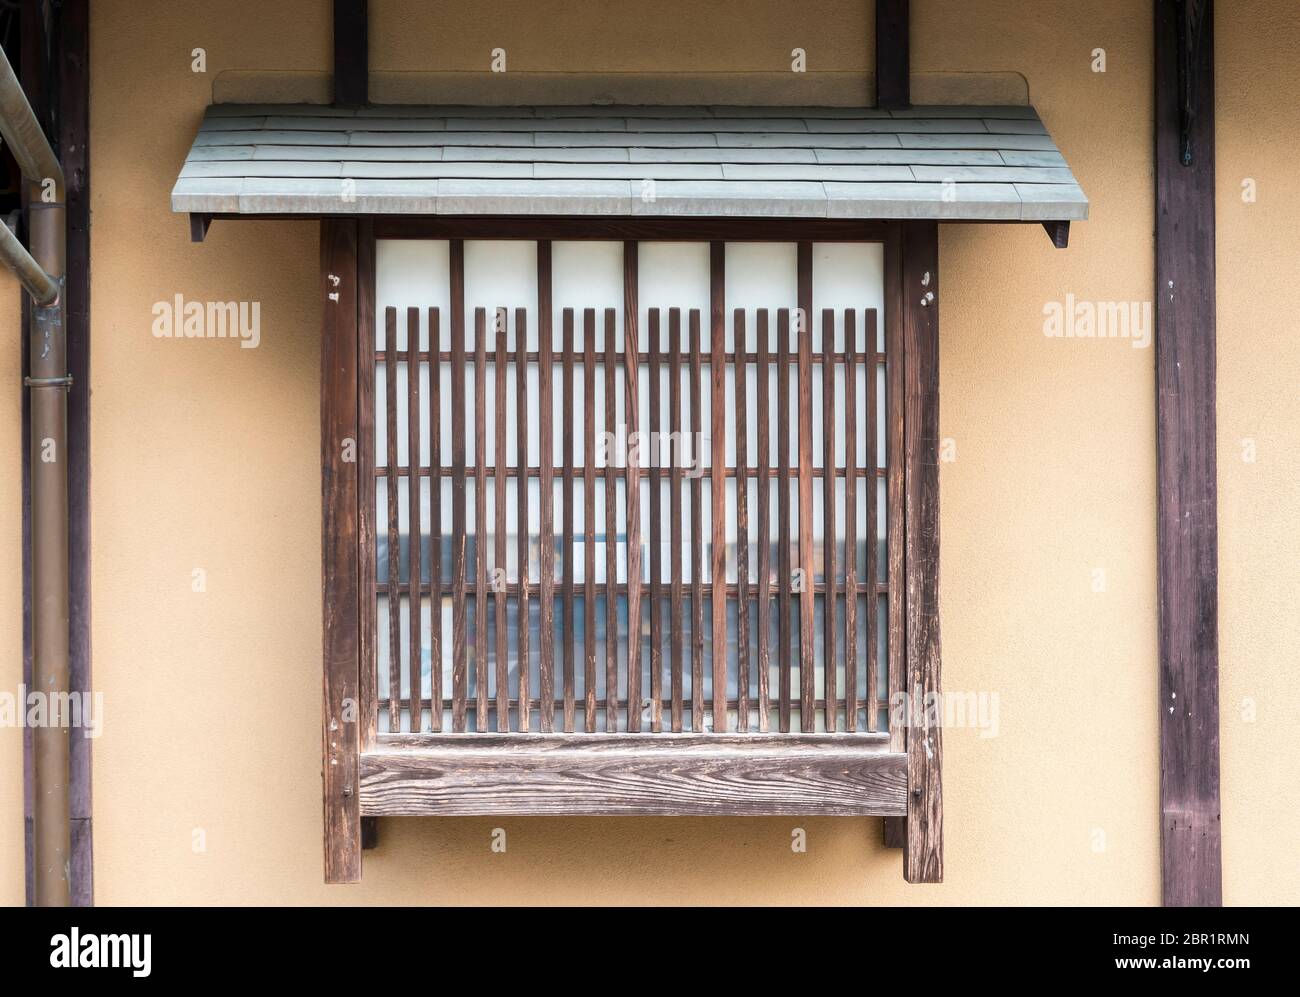 Fenêtre laticée avec shoji de l'ancienne maison japonaise Kyoto Japon Banque D'Images